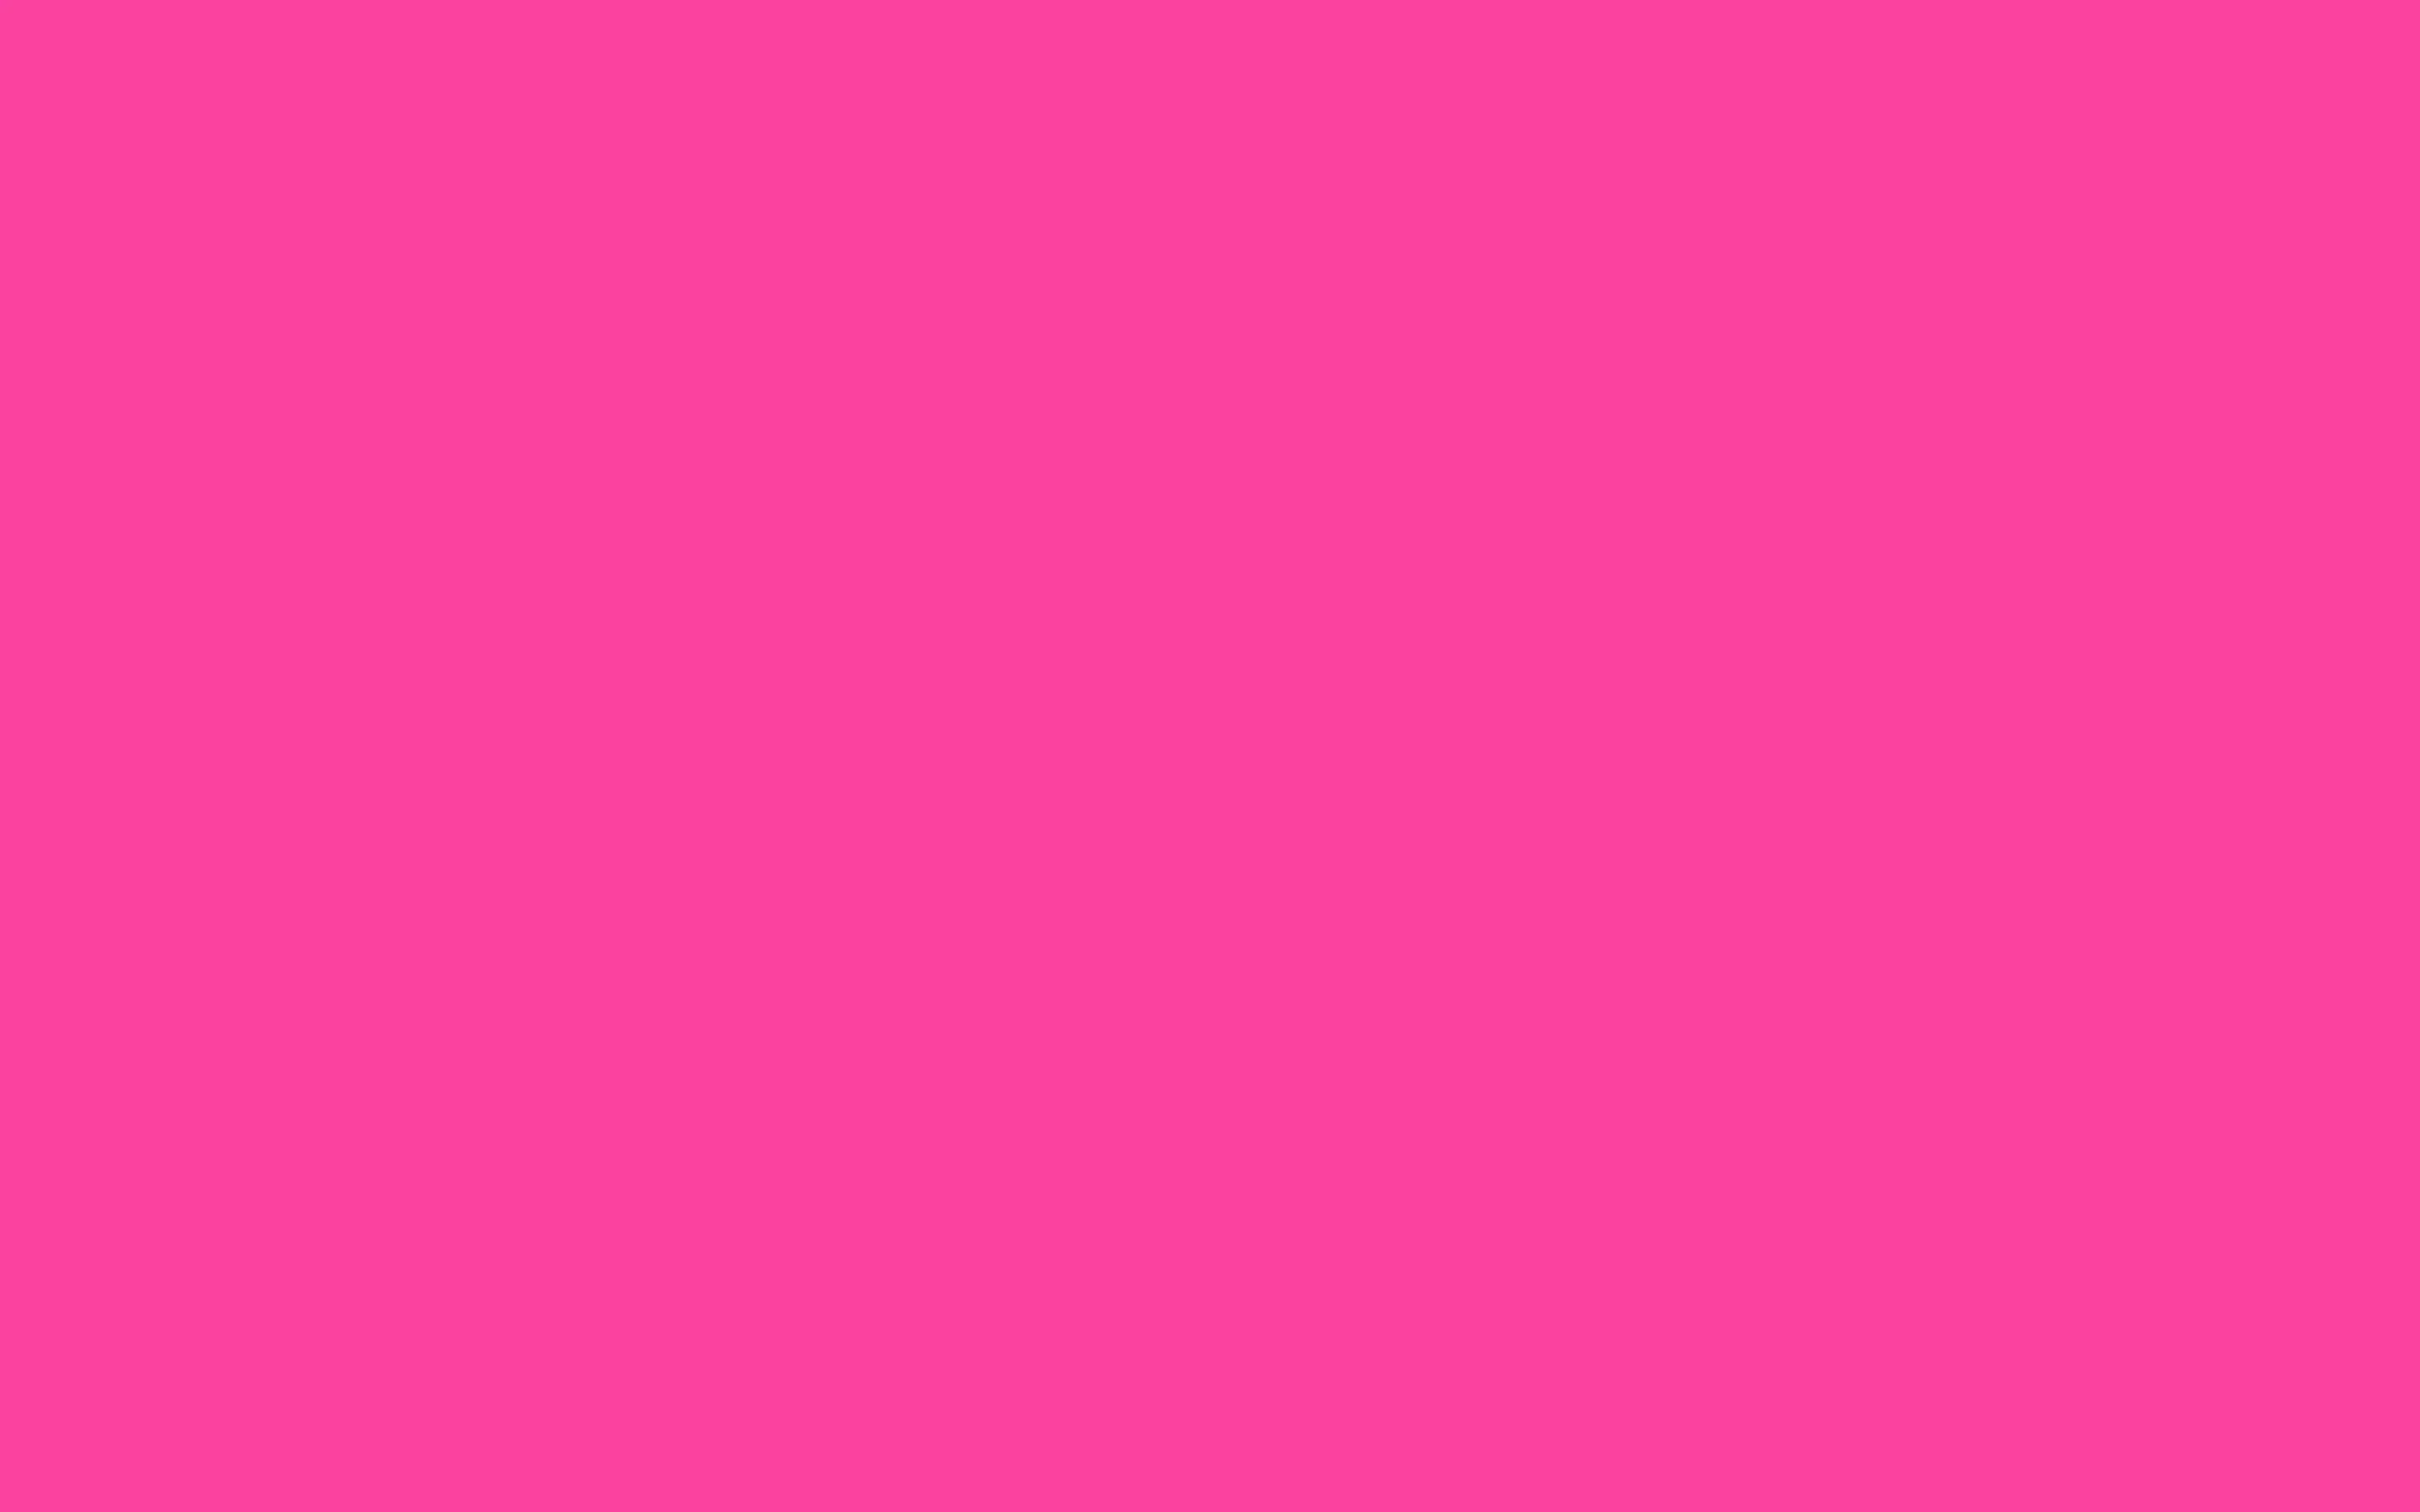 Цветной лист а3. Ламинат Falquon Colorita 6120. U337 st9 фуксия розовая. NCS s3050-r20b. Baker Miller Pink.